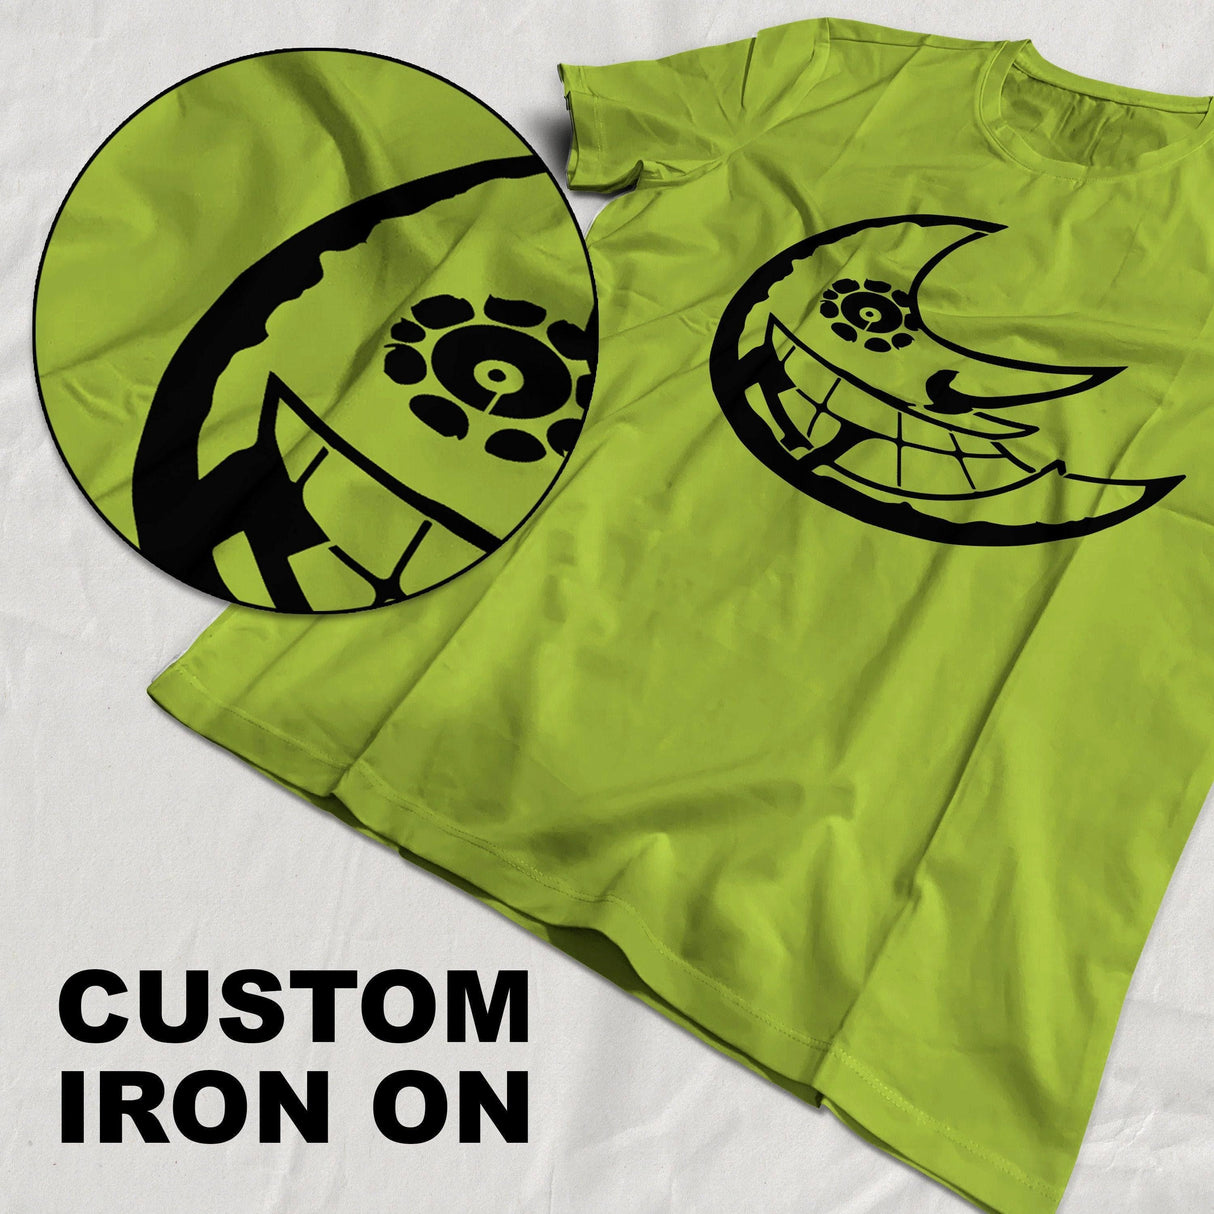 Custom Iron on Transfer Heat Vinyl T Shirt - DIY Design 18 x 18